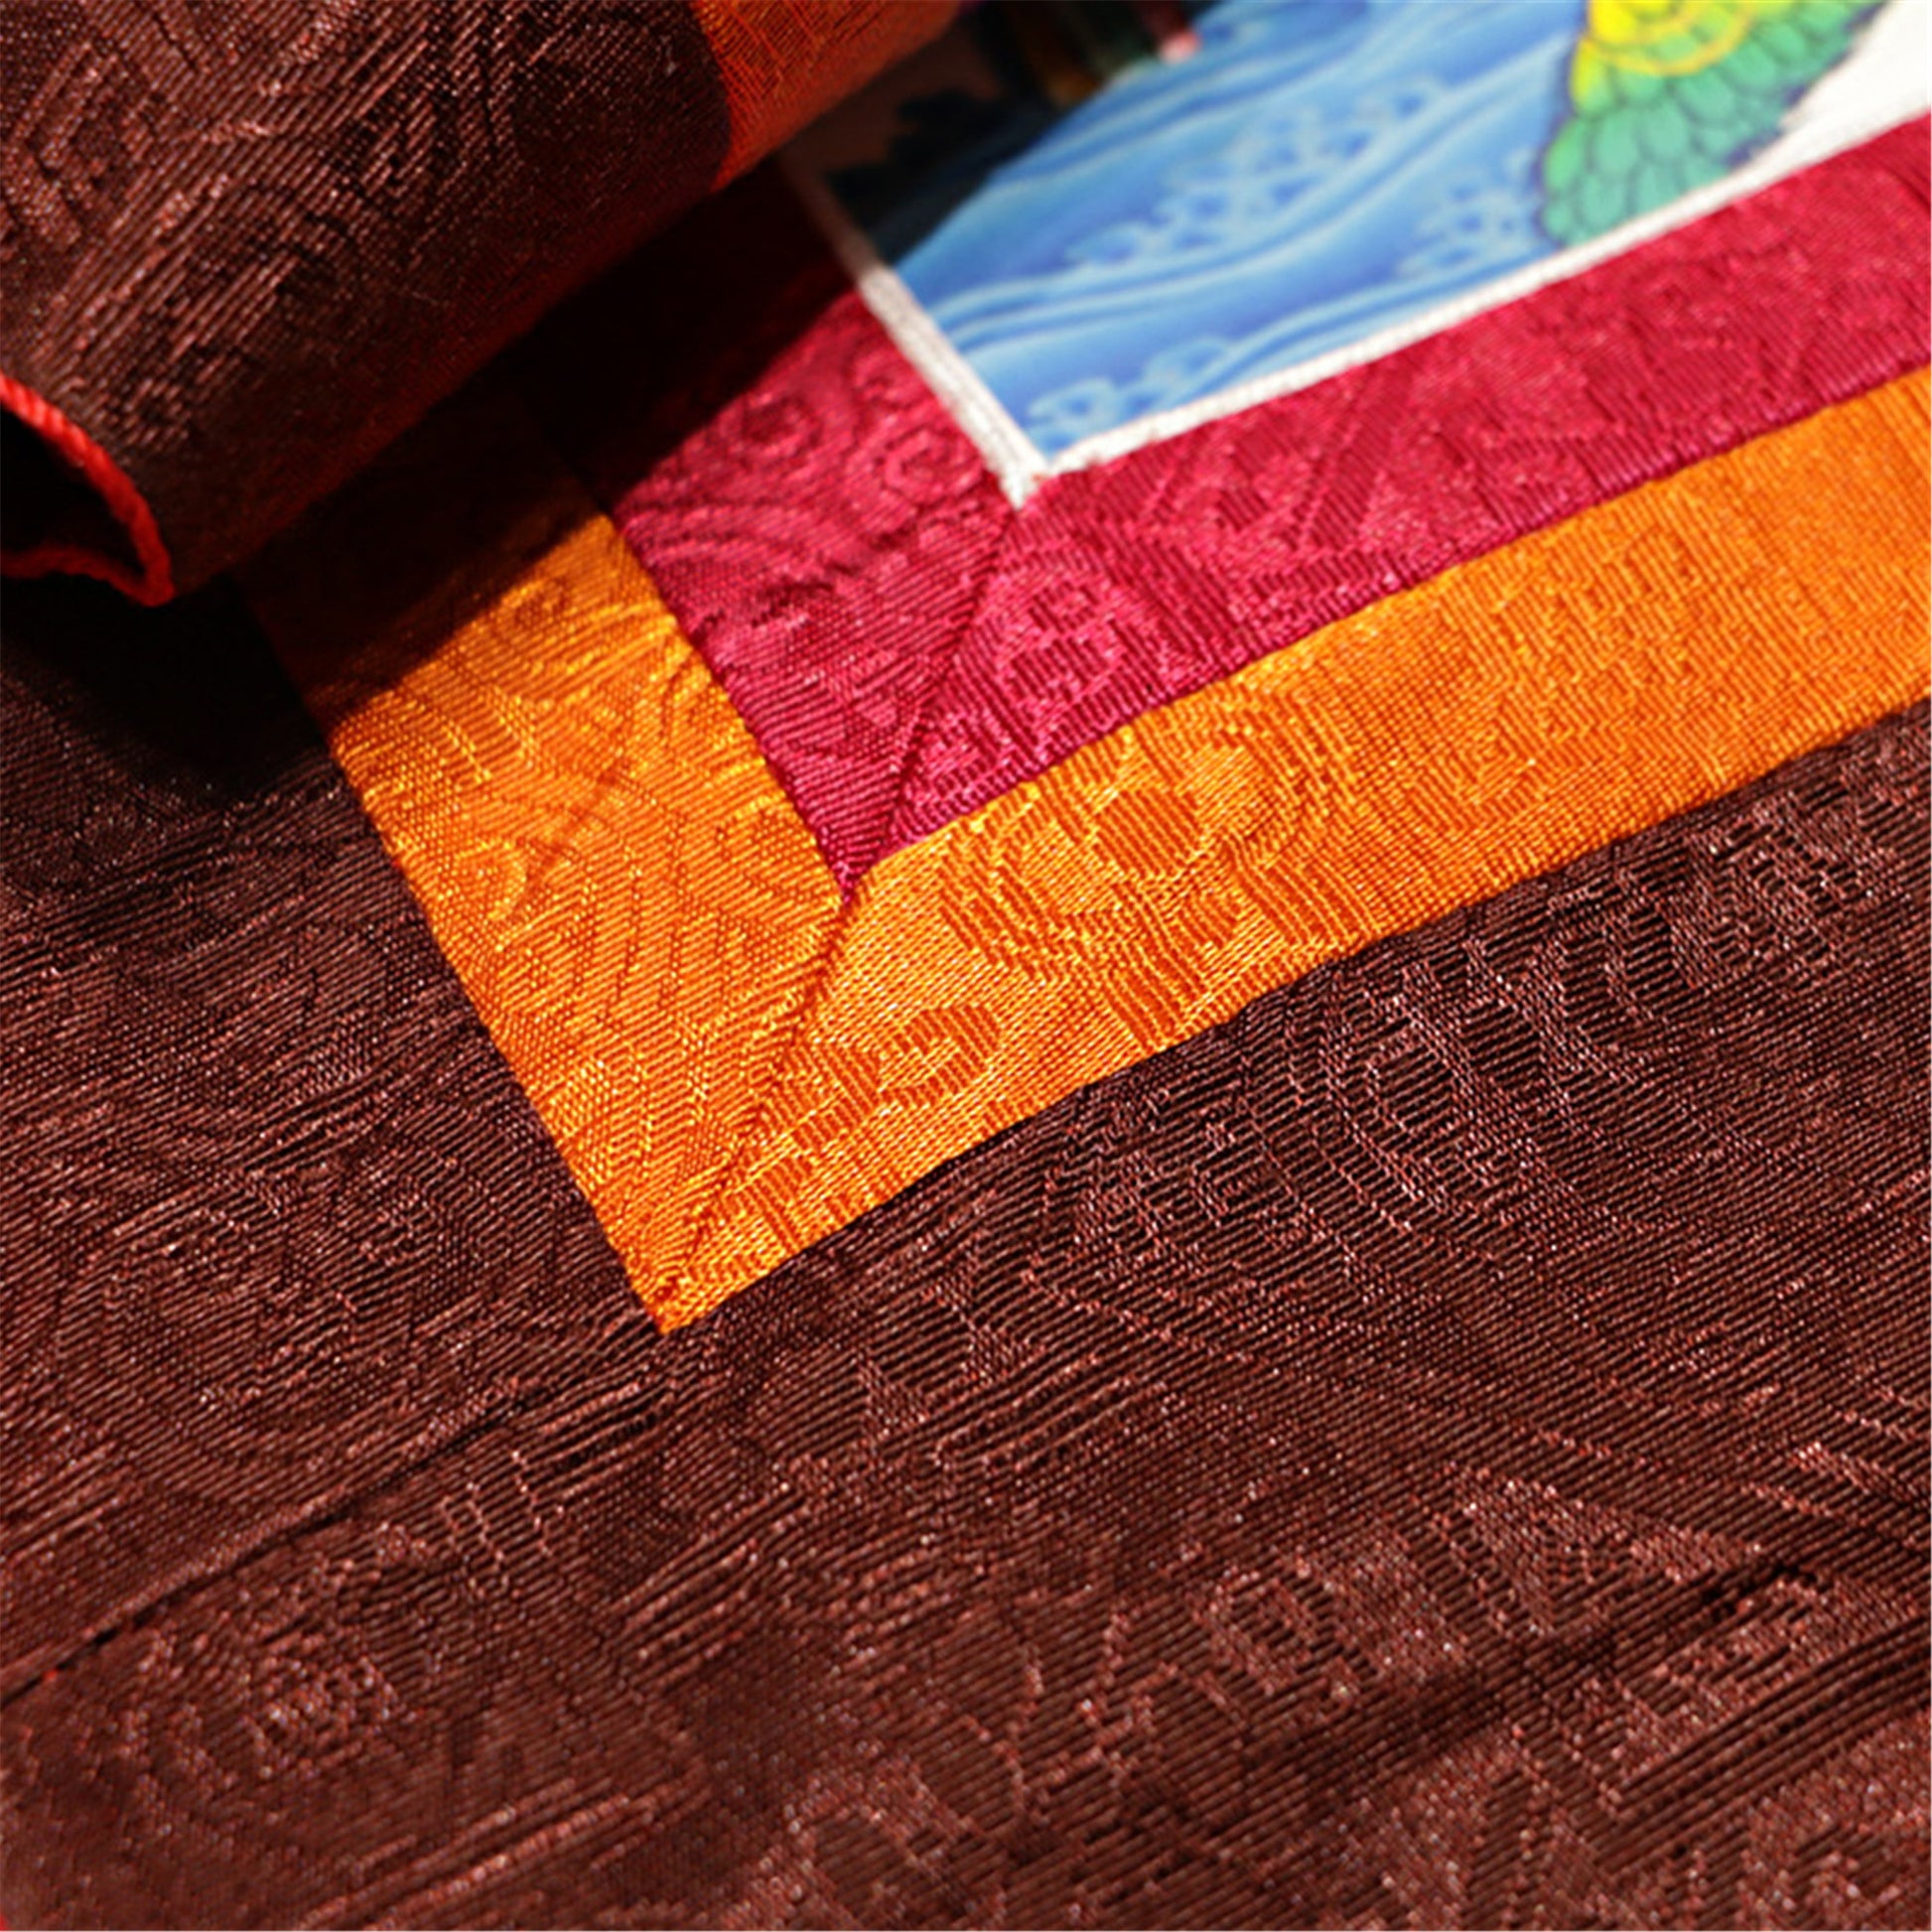 Gandhanra Thangka-Details-cloth-texture